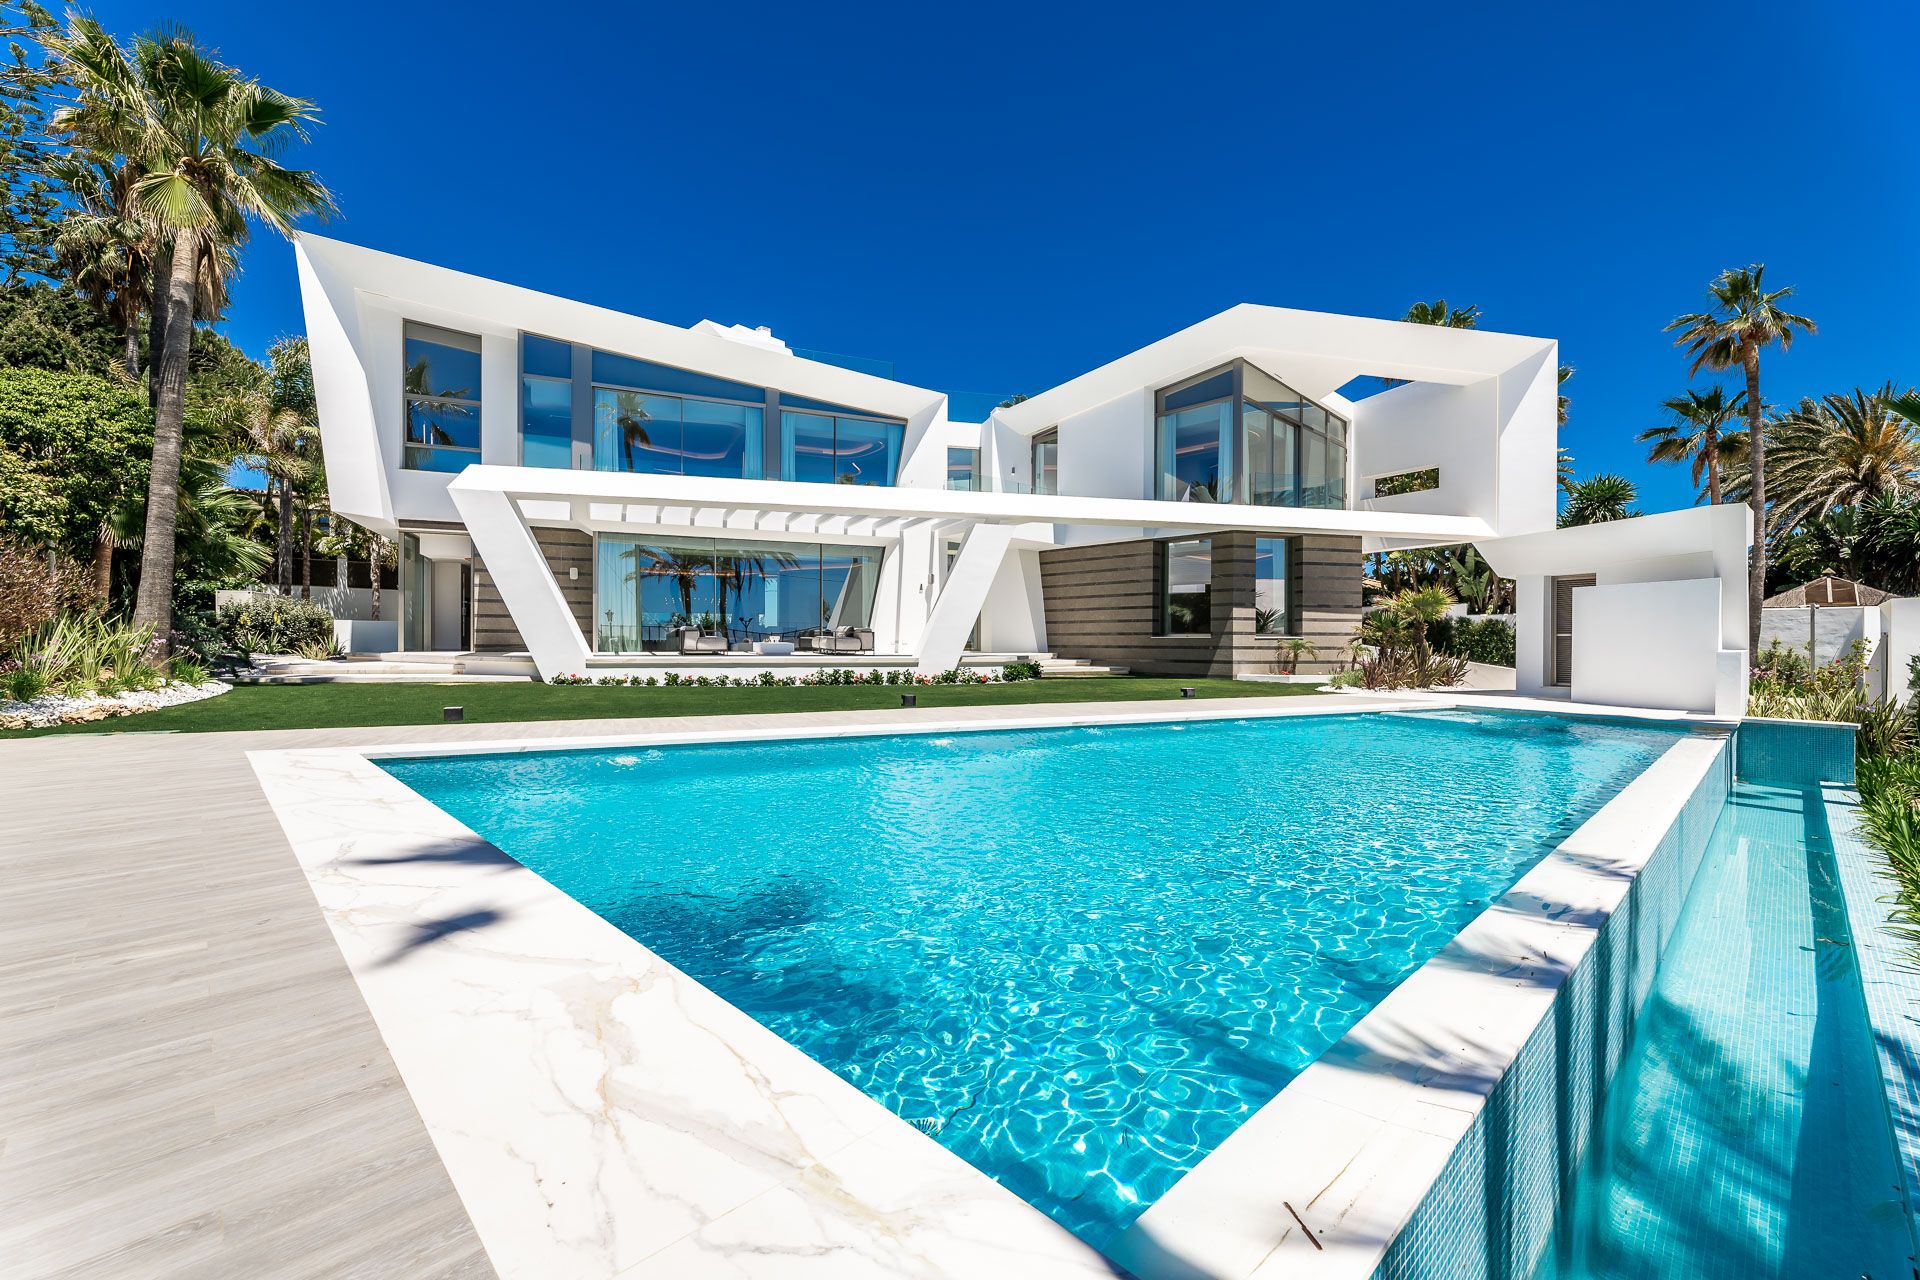 Portal Inmobiliario de Lujo en Los Monteros, presenta chalet de lujo venta en Marbella, inmuebles de alto standing para comprar y villas exclusivas en venta en Milla de Oro.